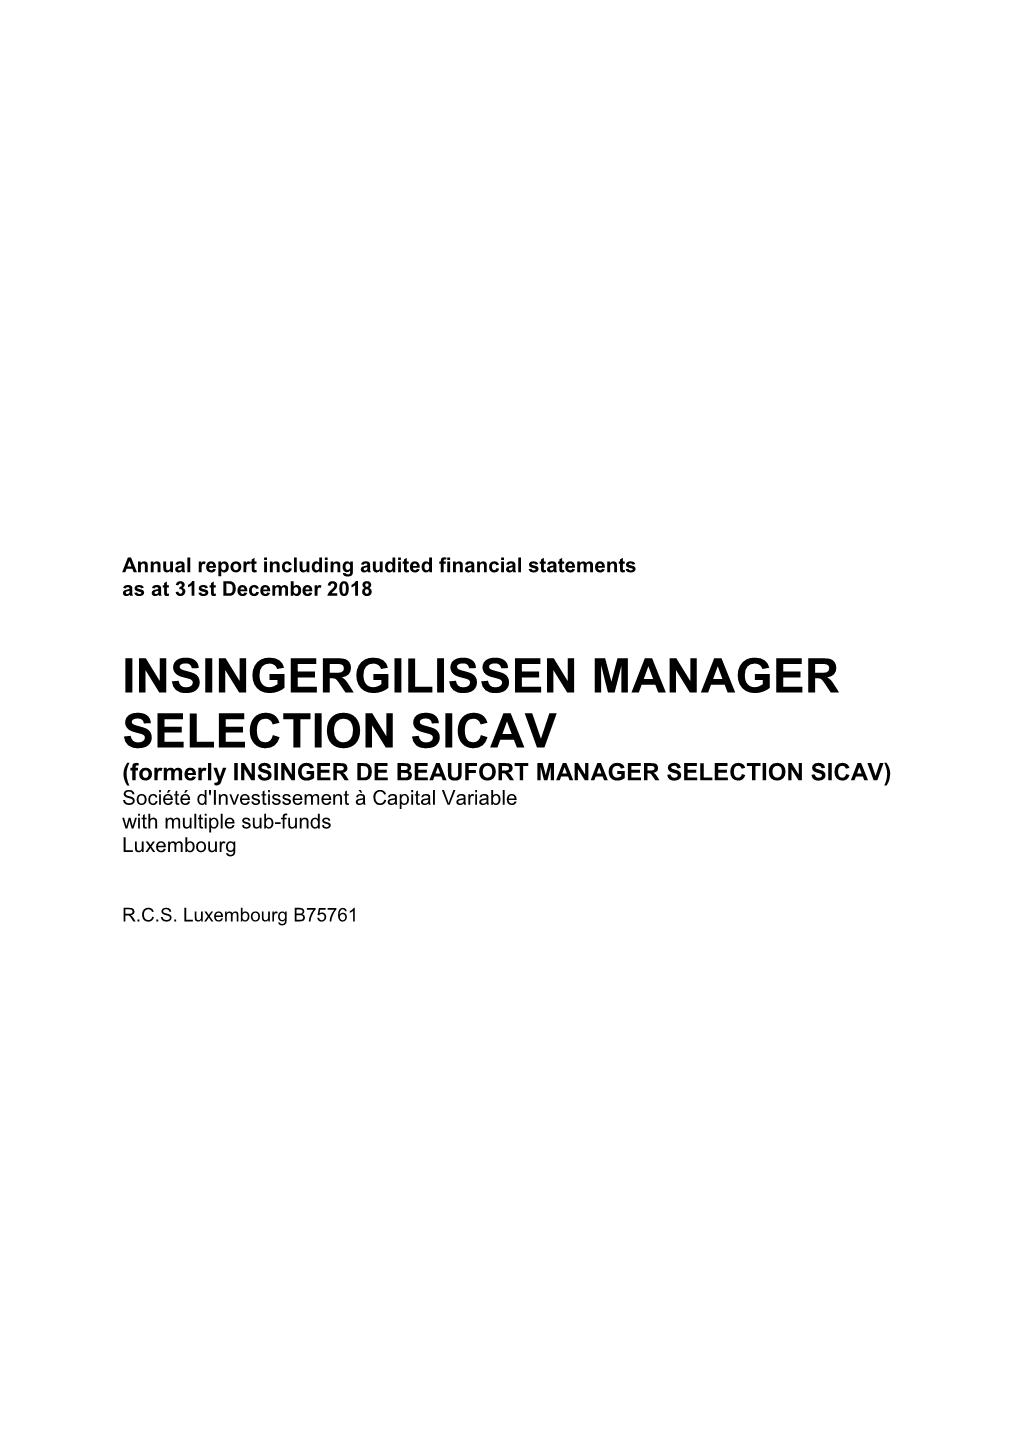 Insingergilissen Manager Selection Sicav